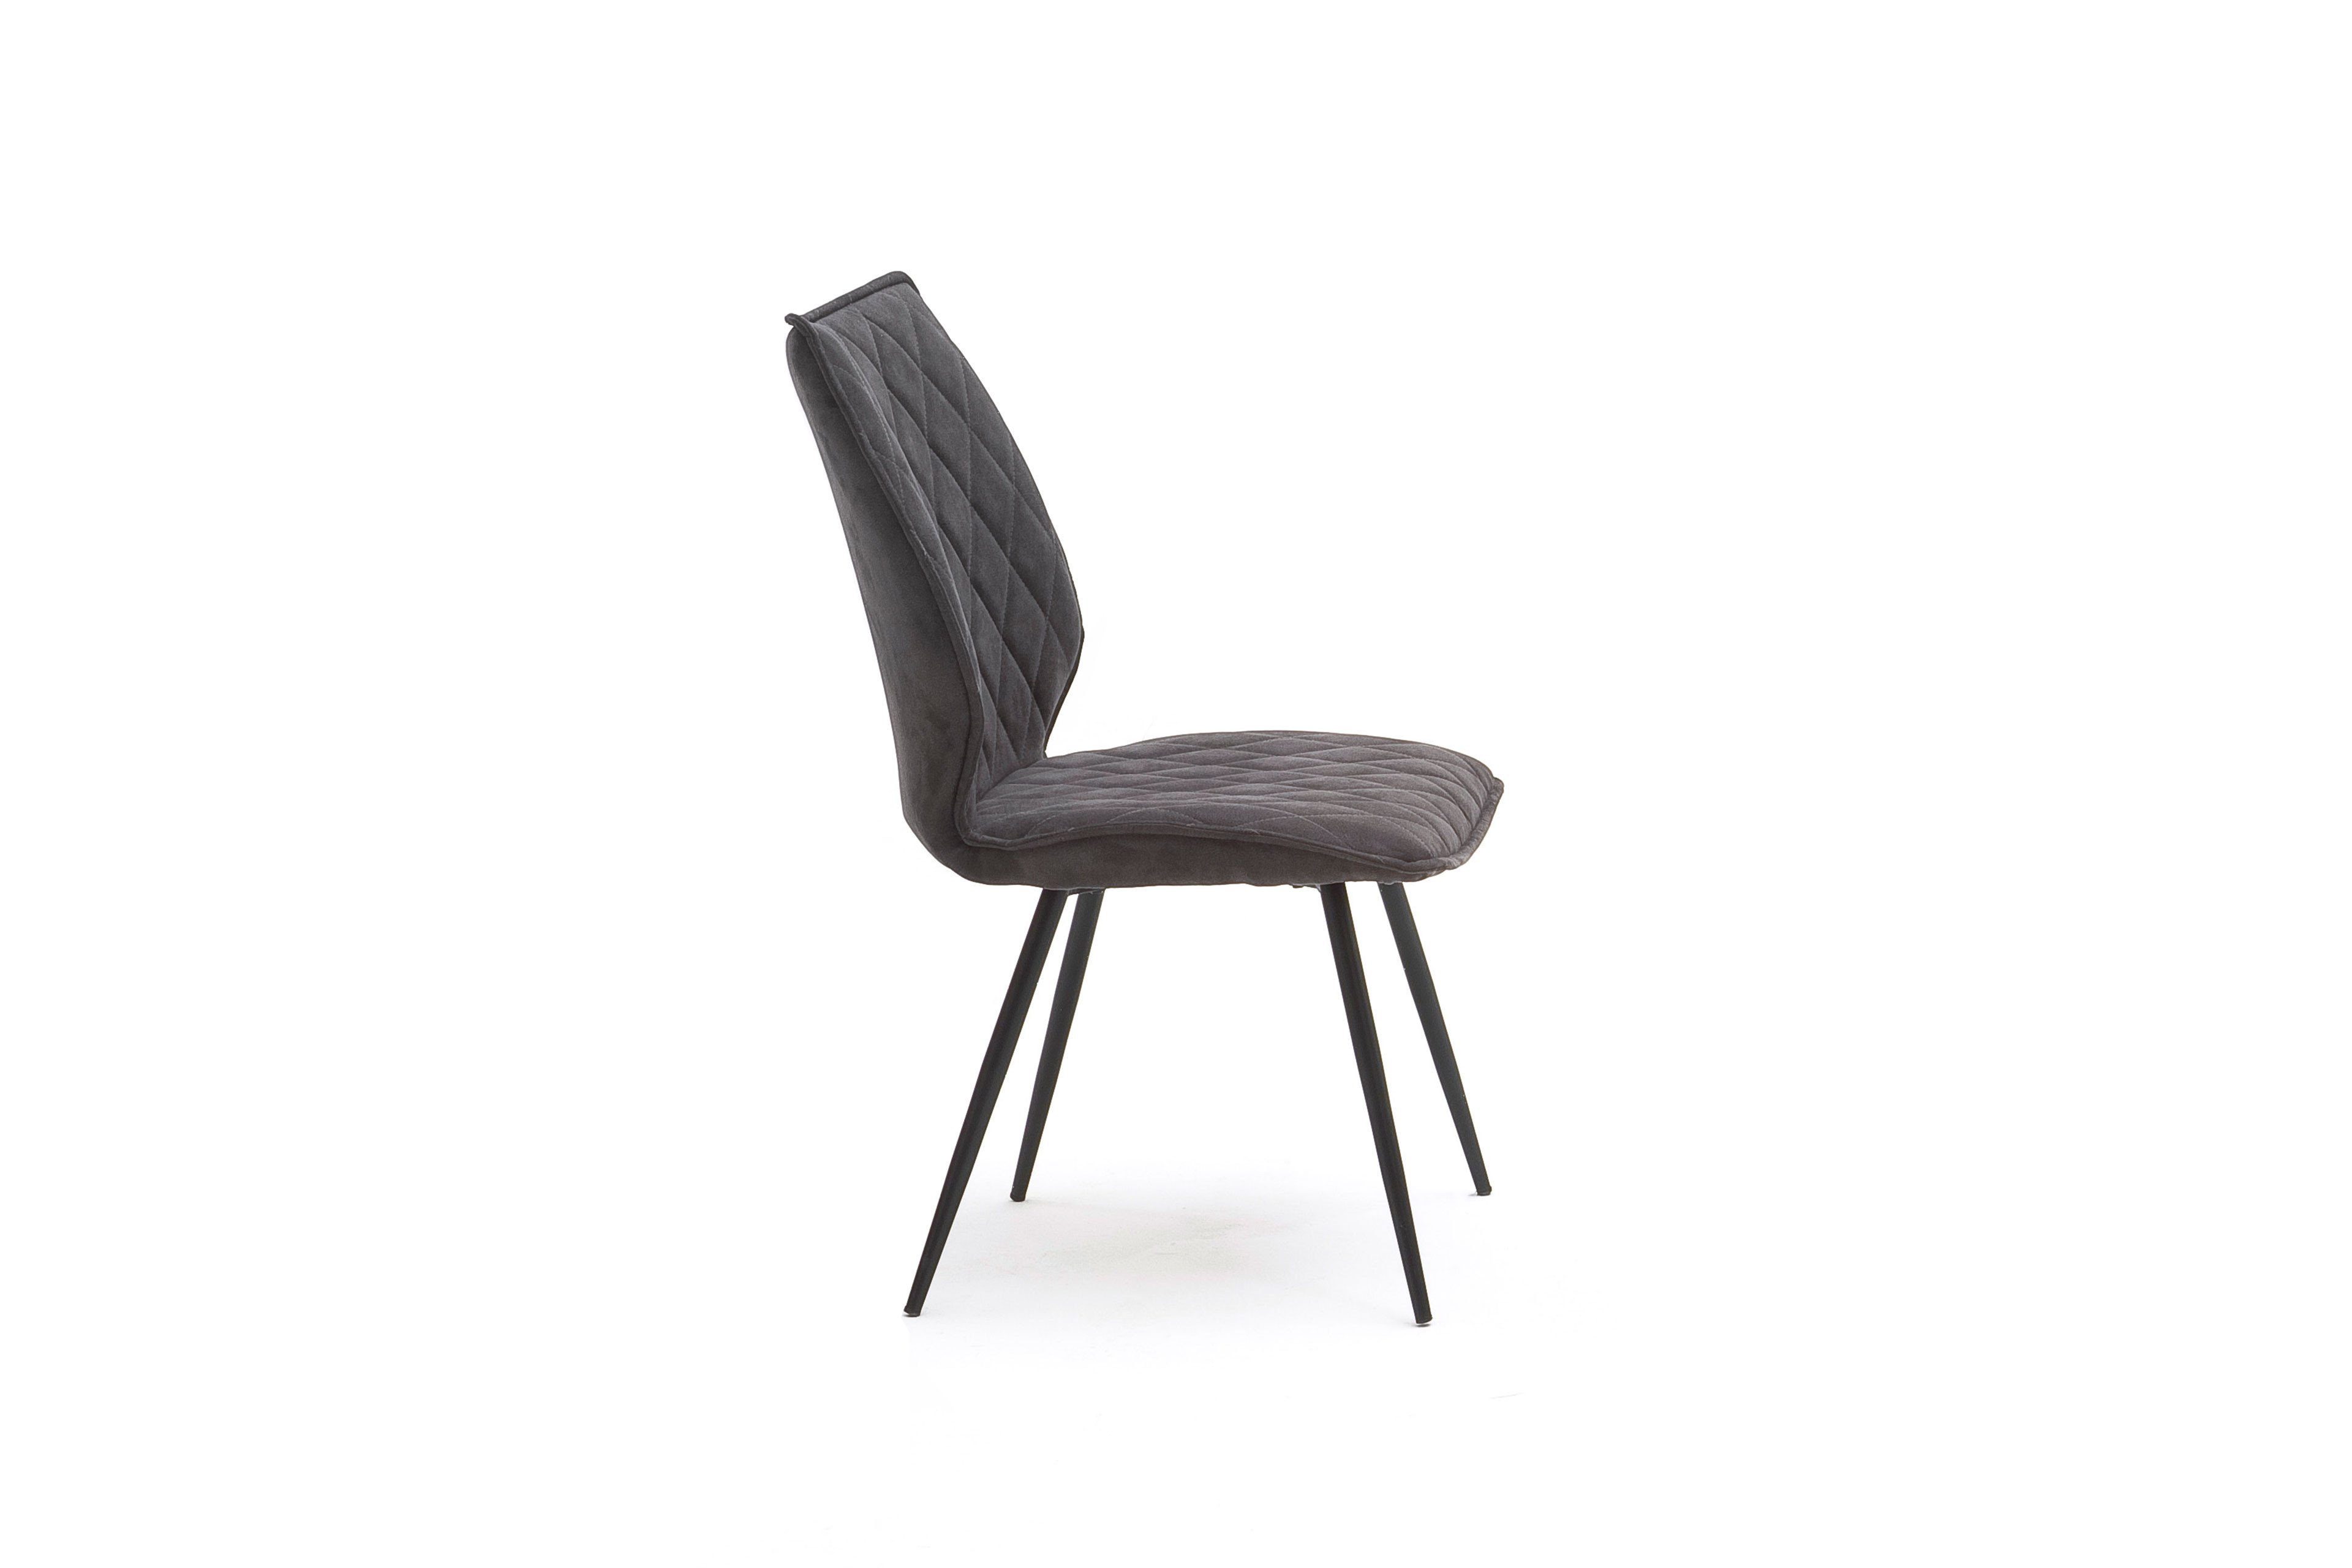 MCA furniture Stuhl Navarra in Anthrazit | Möbel Letz - Ihr Online-Shop | Stühle